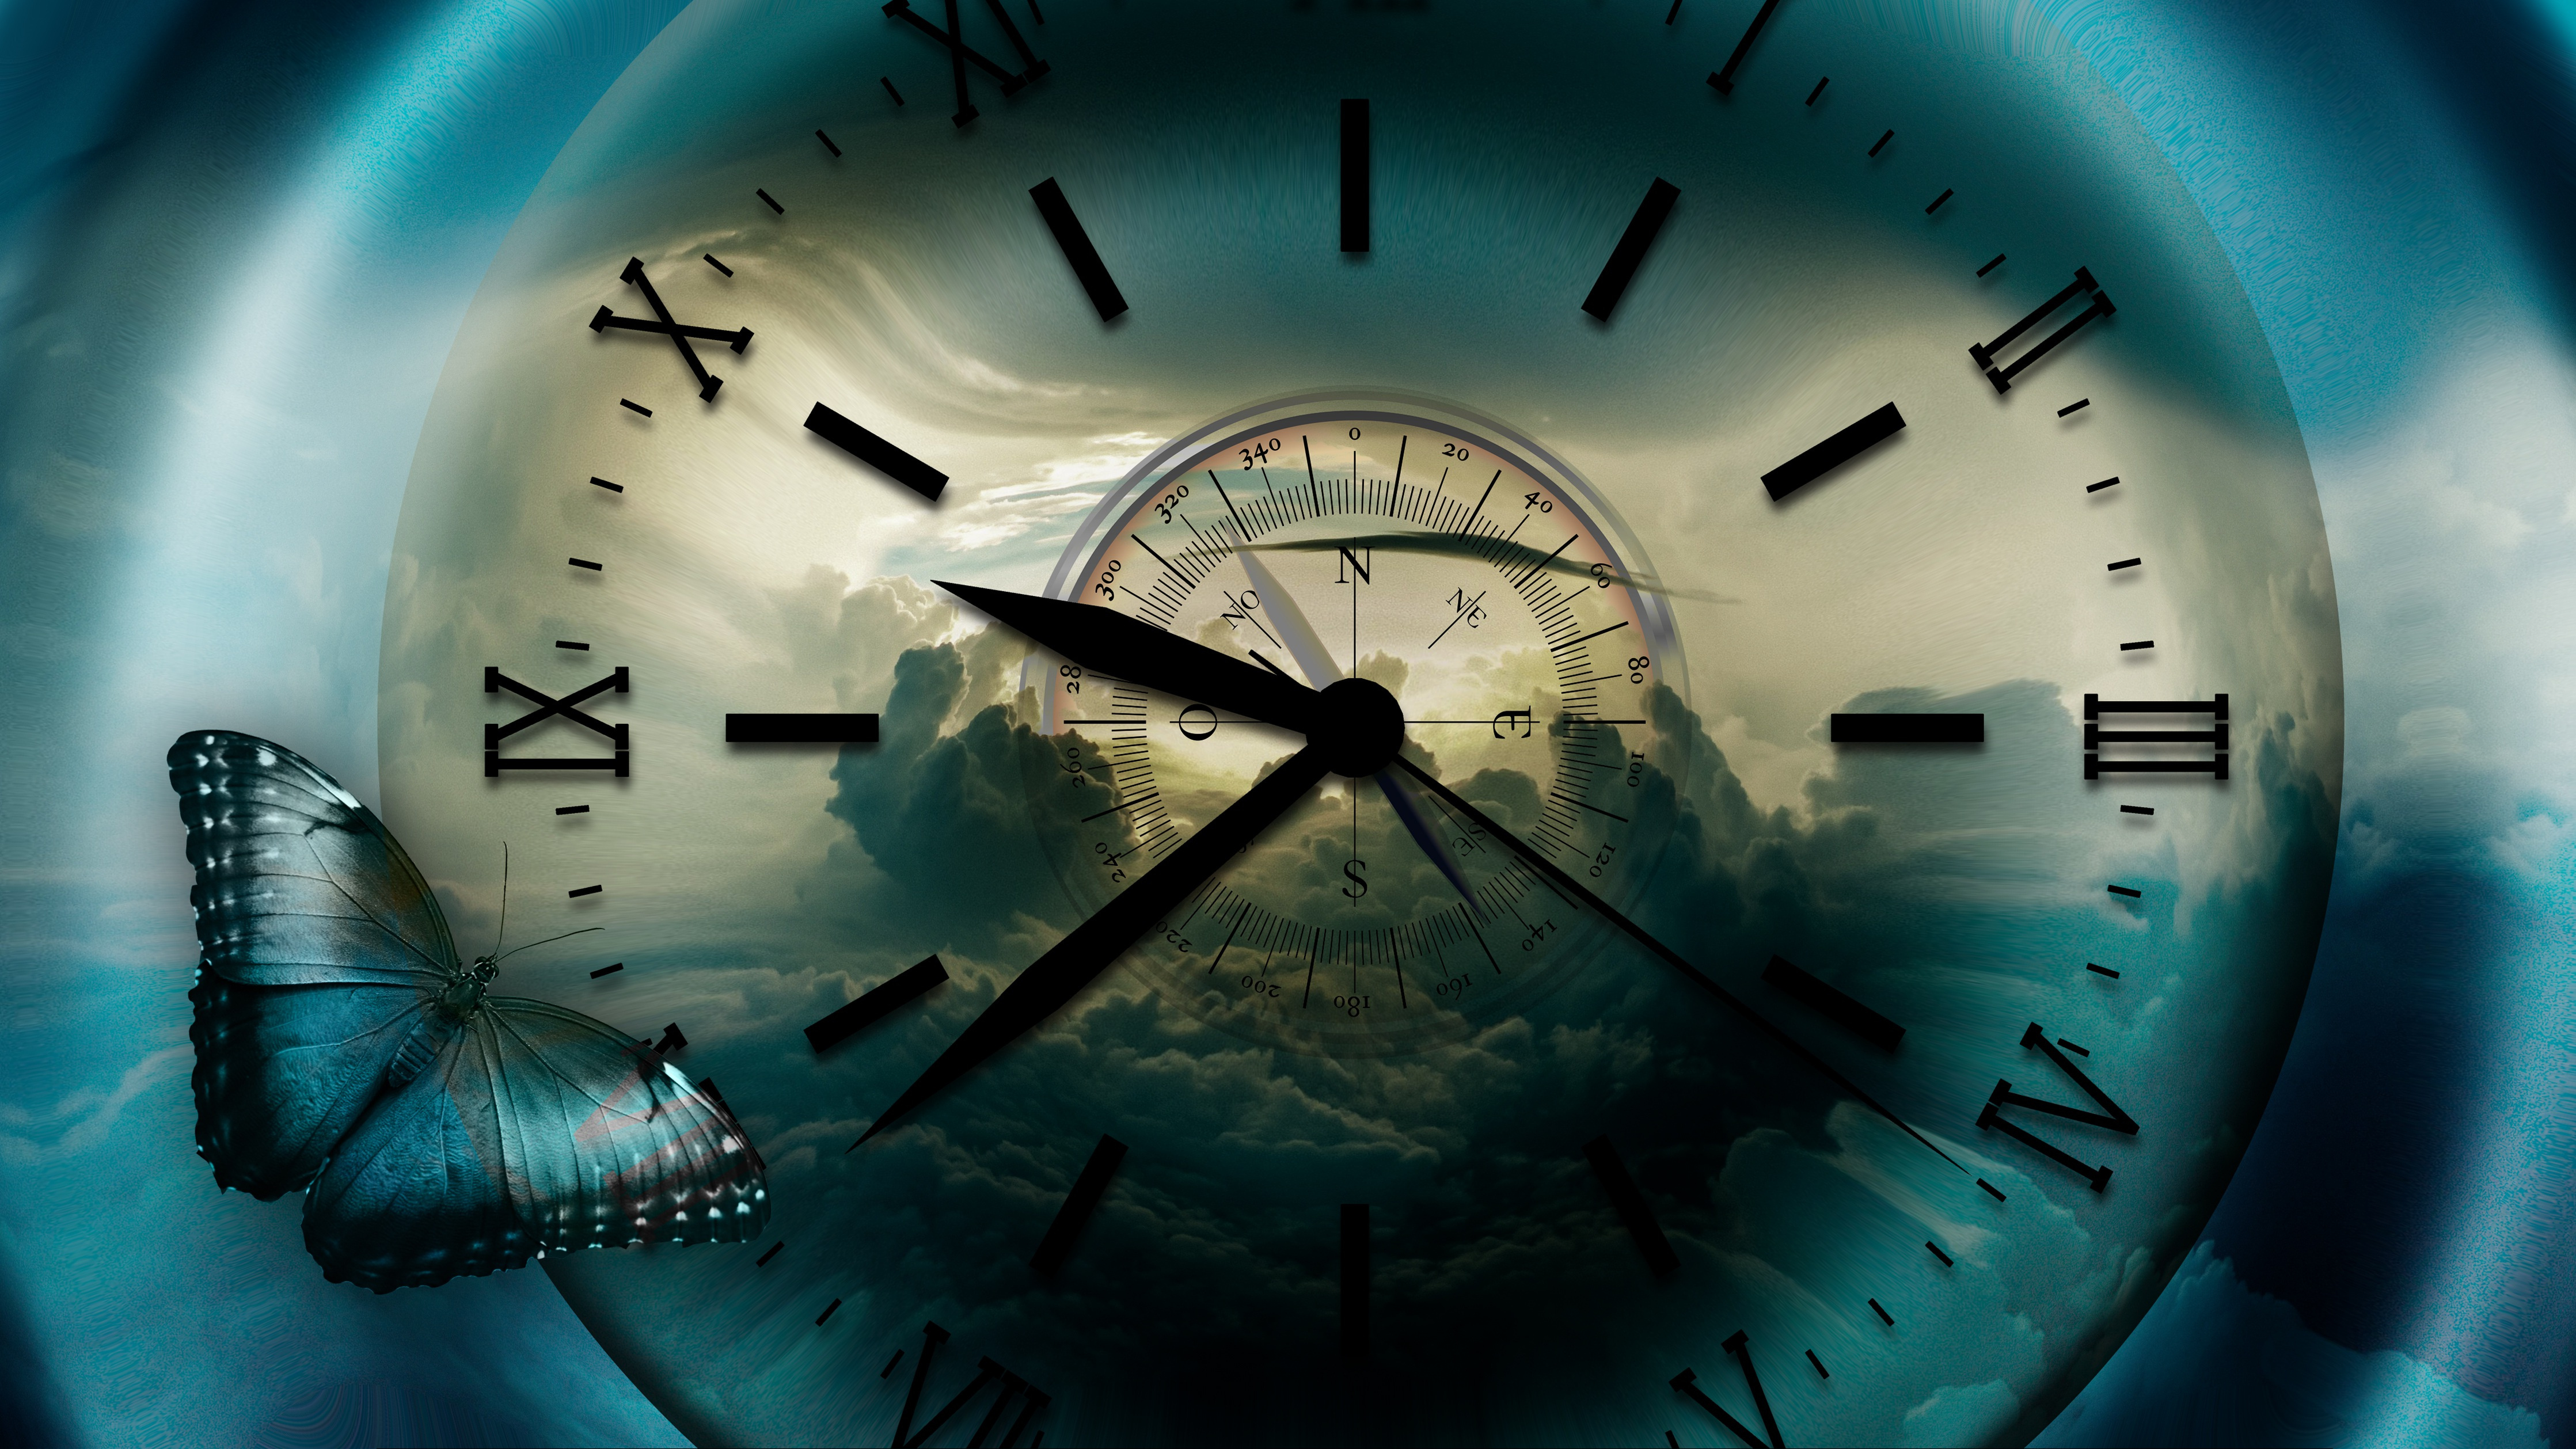 Бесплатное фото Красивая картинка с изображением циферблата часов